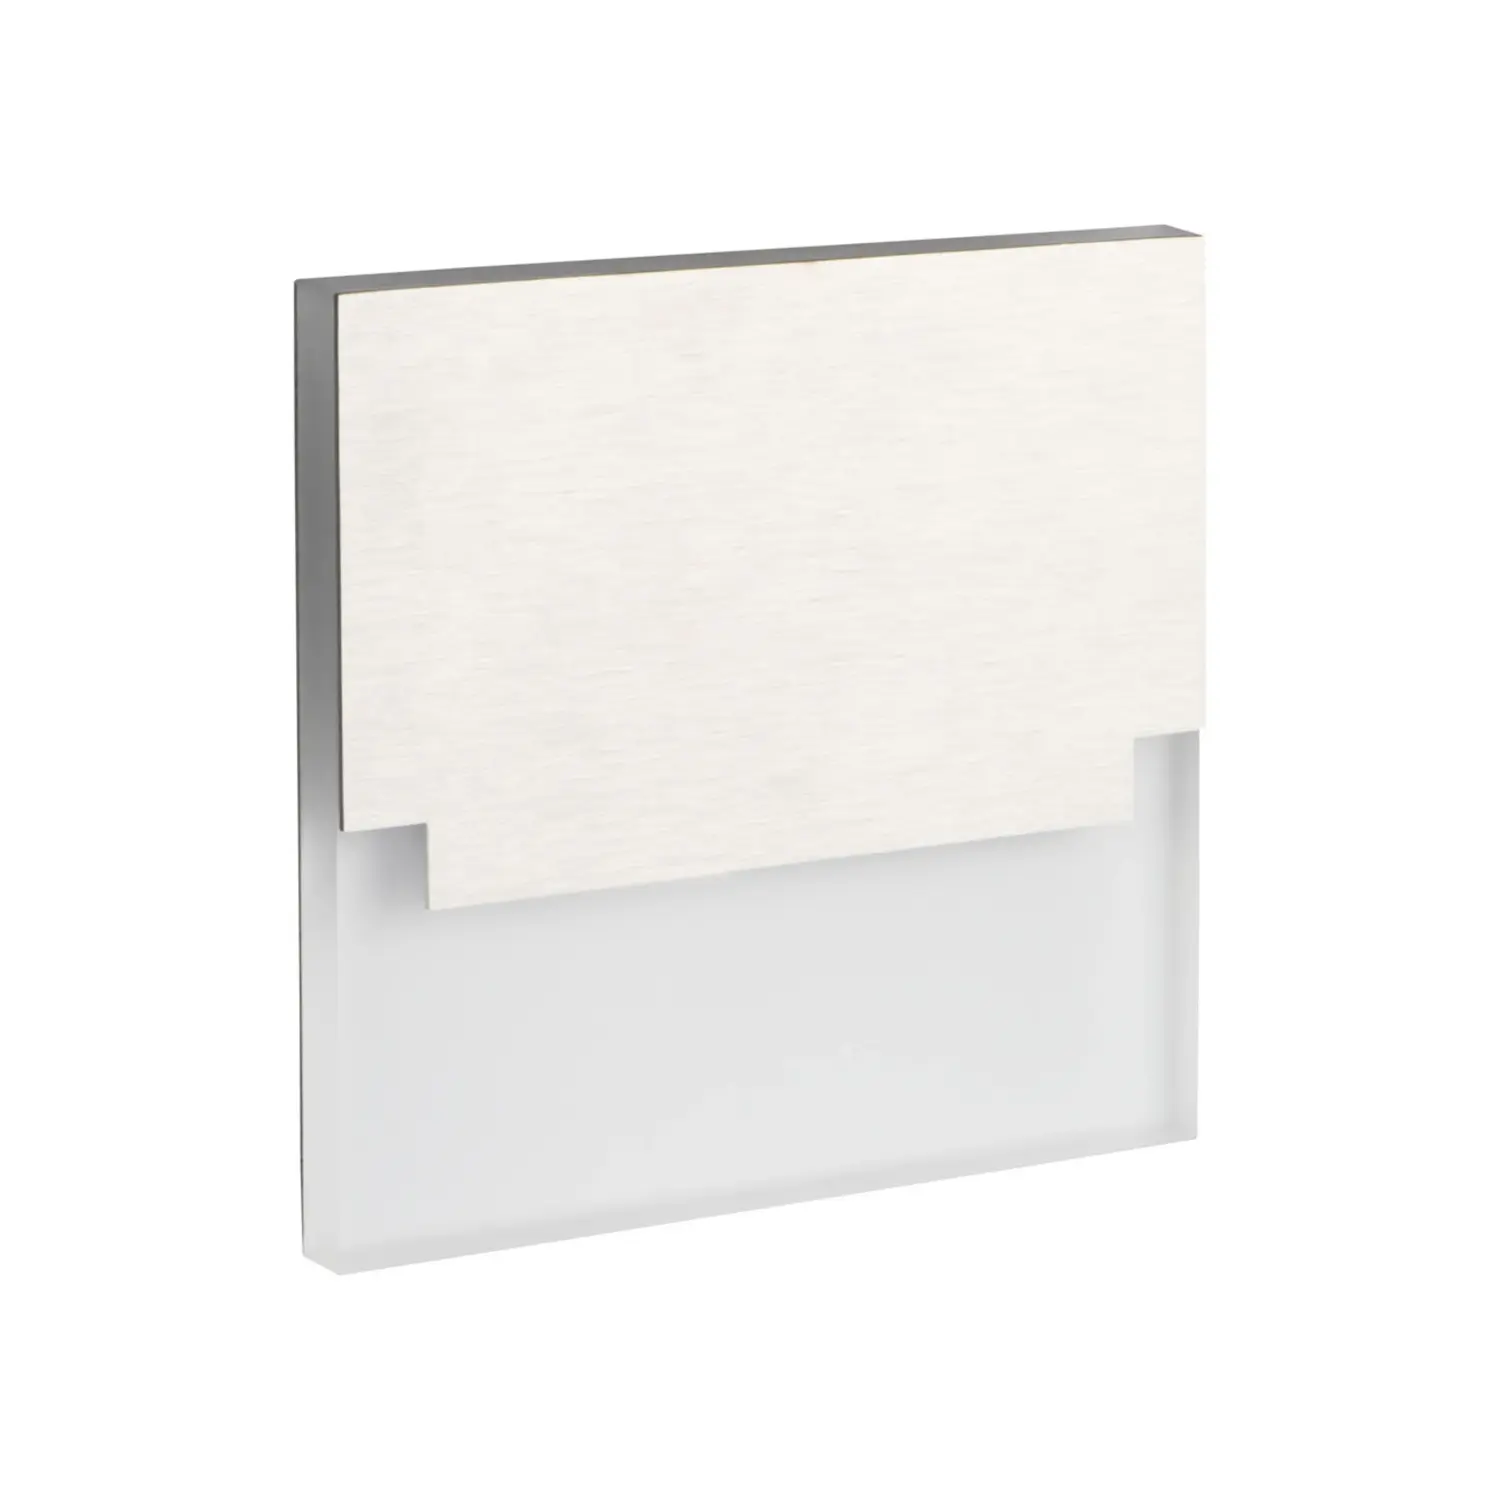 immagine del prodotto segnapasso led sabik scala 0,80 watt 12 volt bianco freddo alluminio quadrato